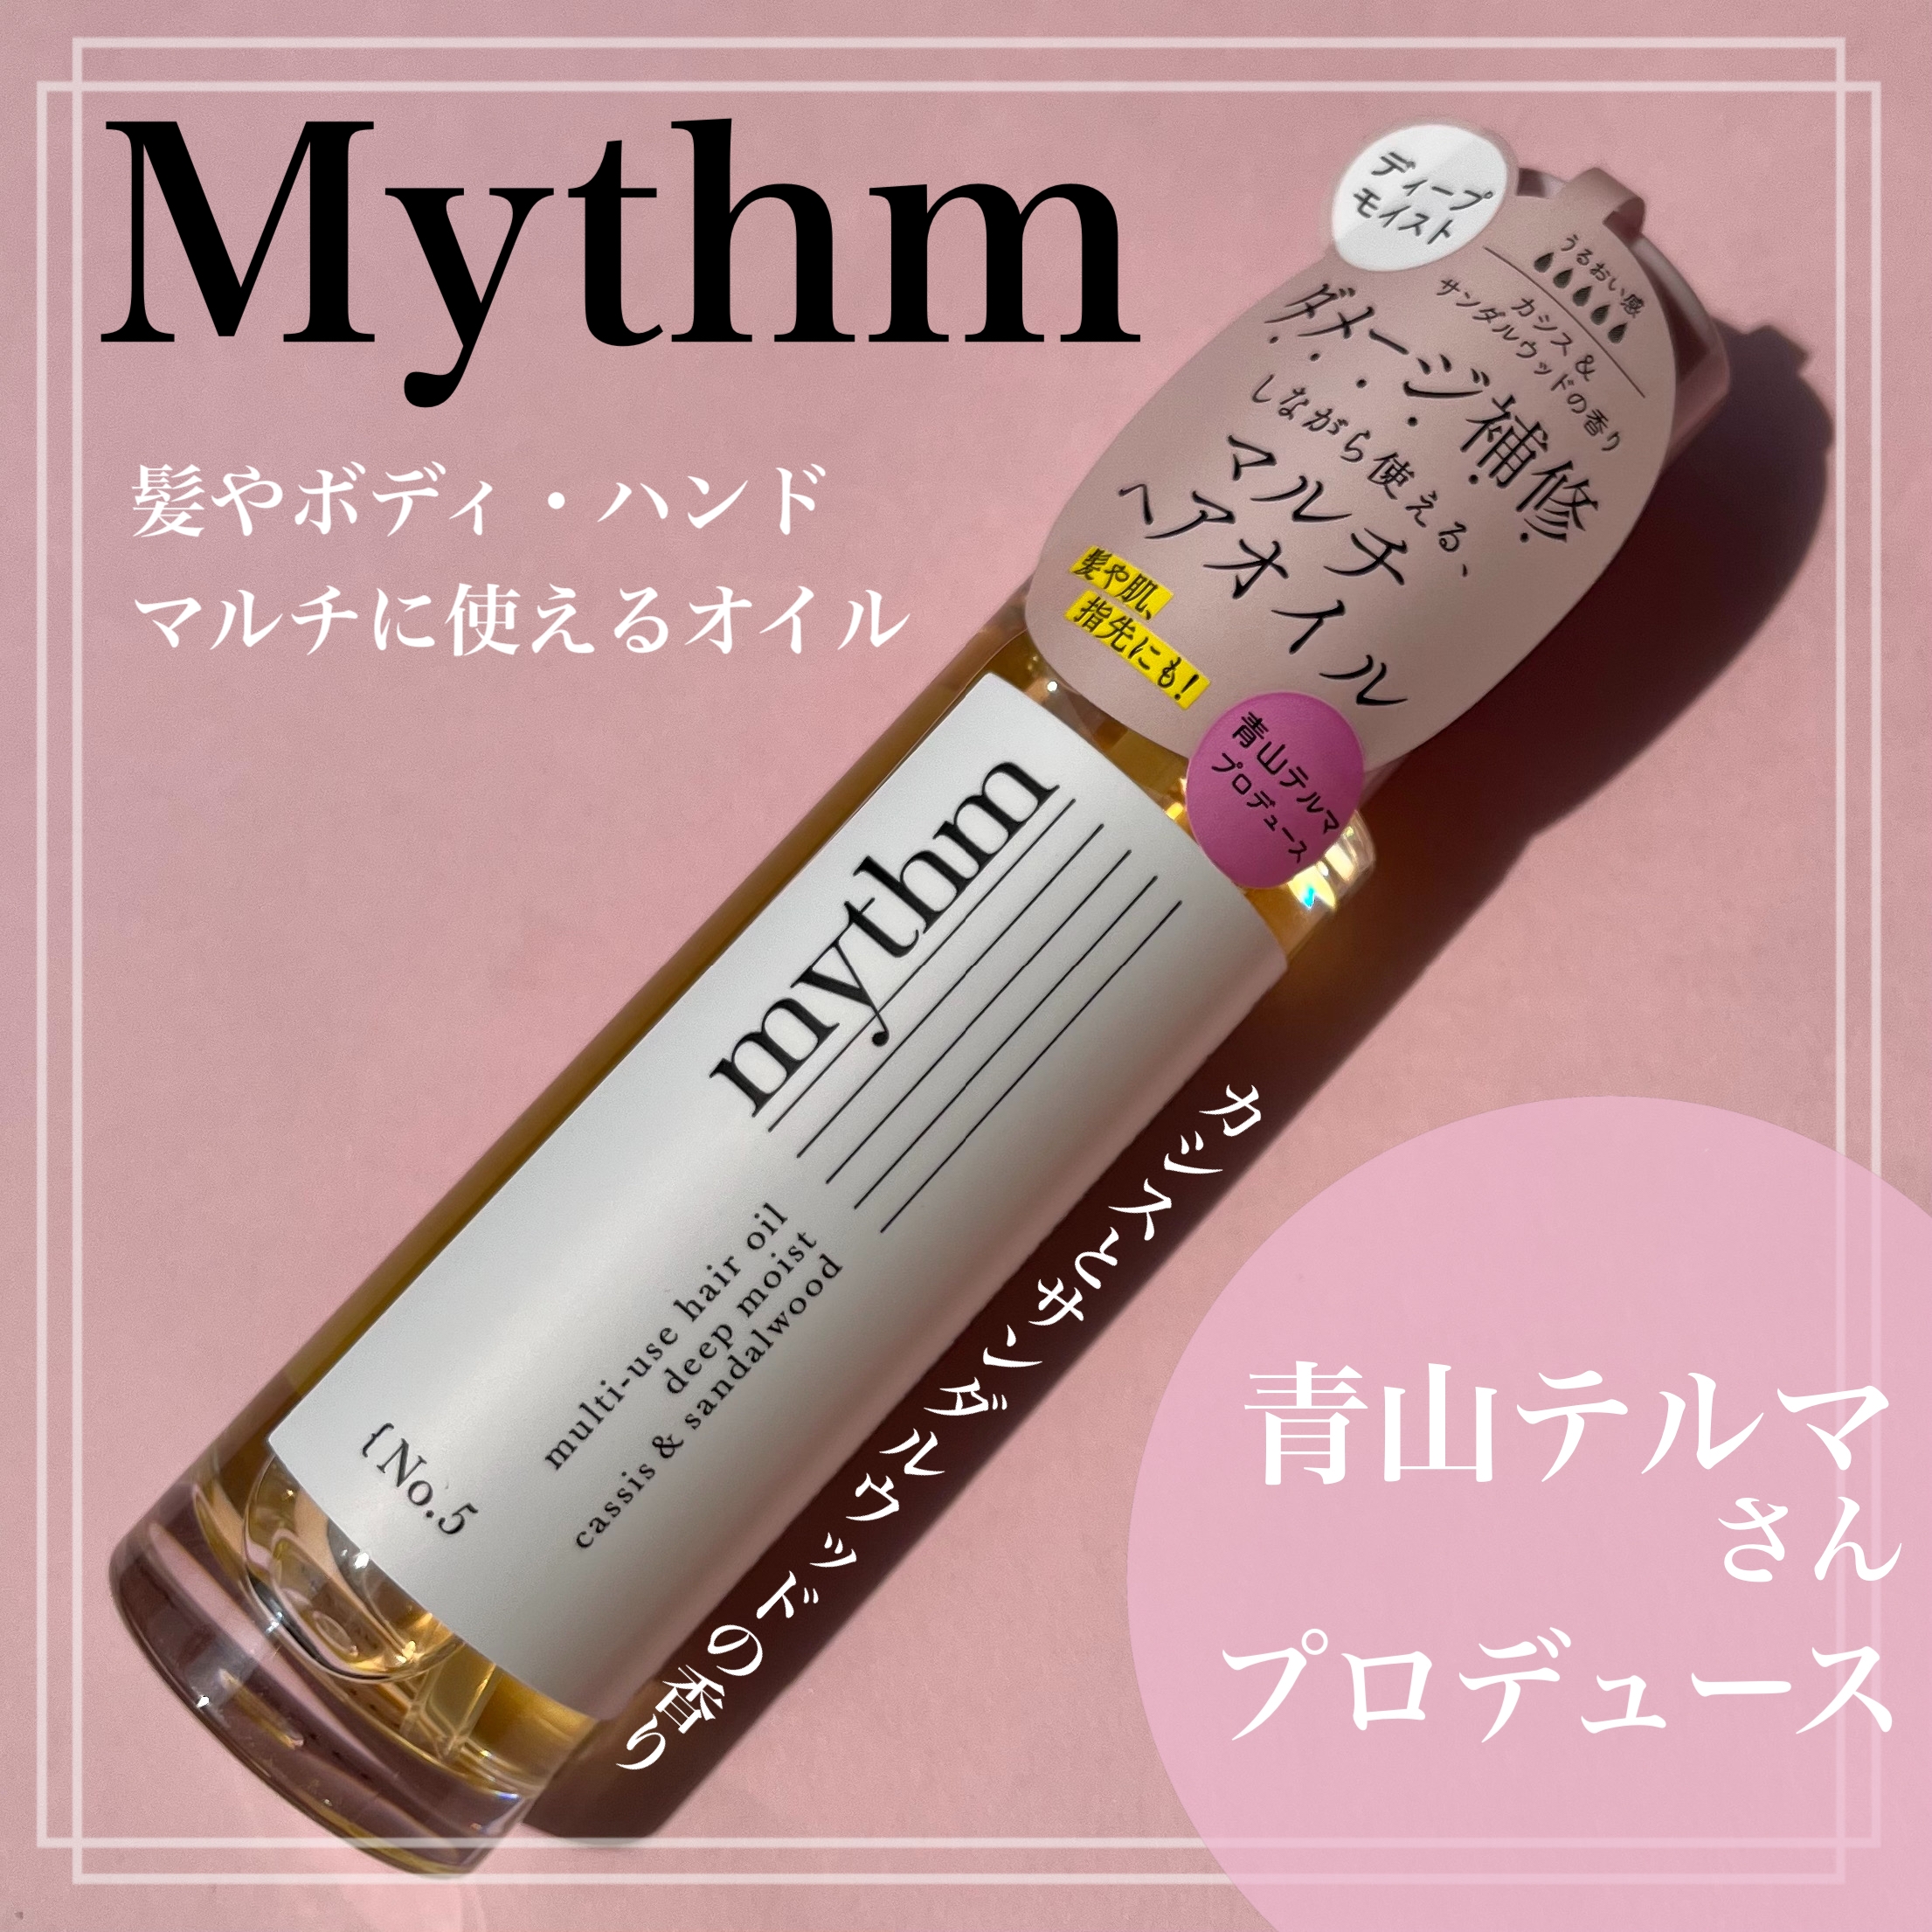 mythm(ミズム) マルチユースヘアオイル ディープモイストの良い点・メリットに関するsachikoさんの口コミ画像1